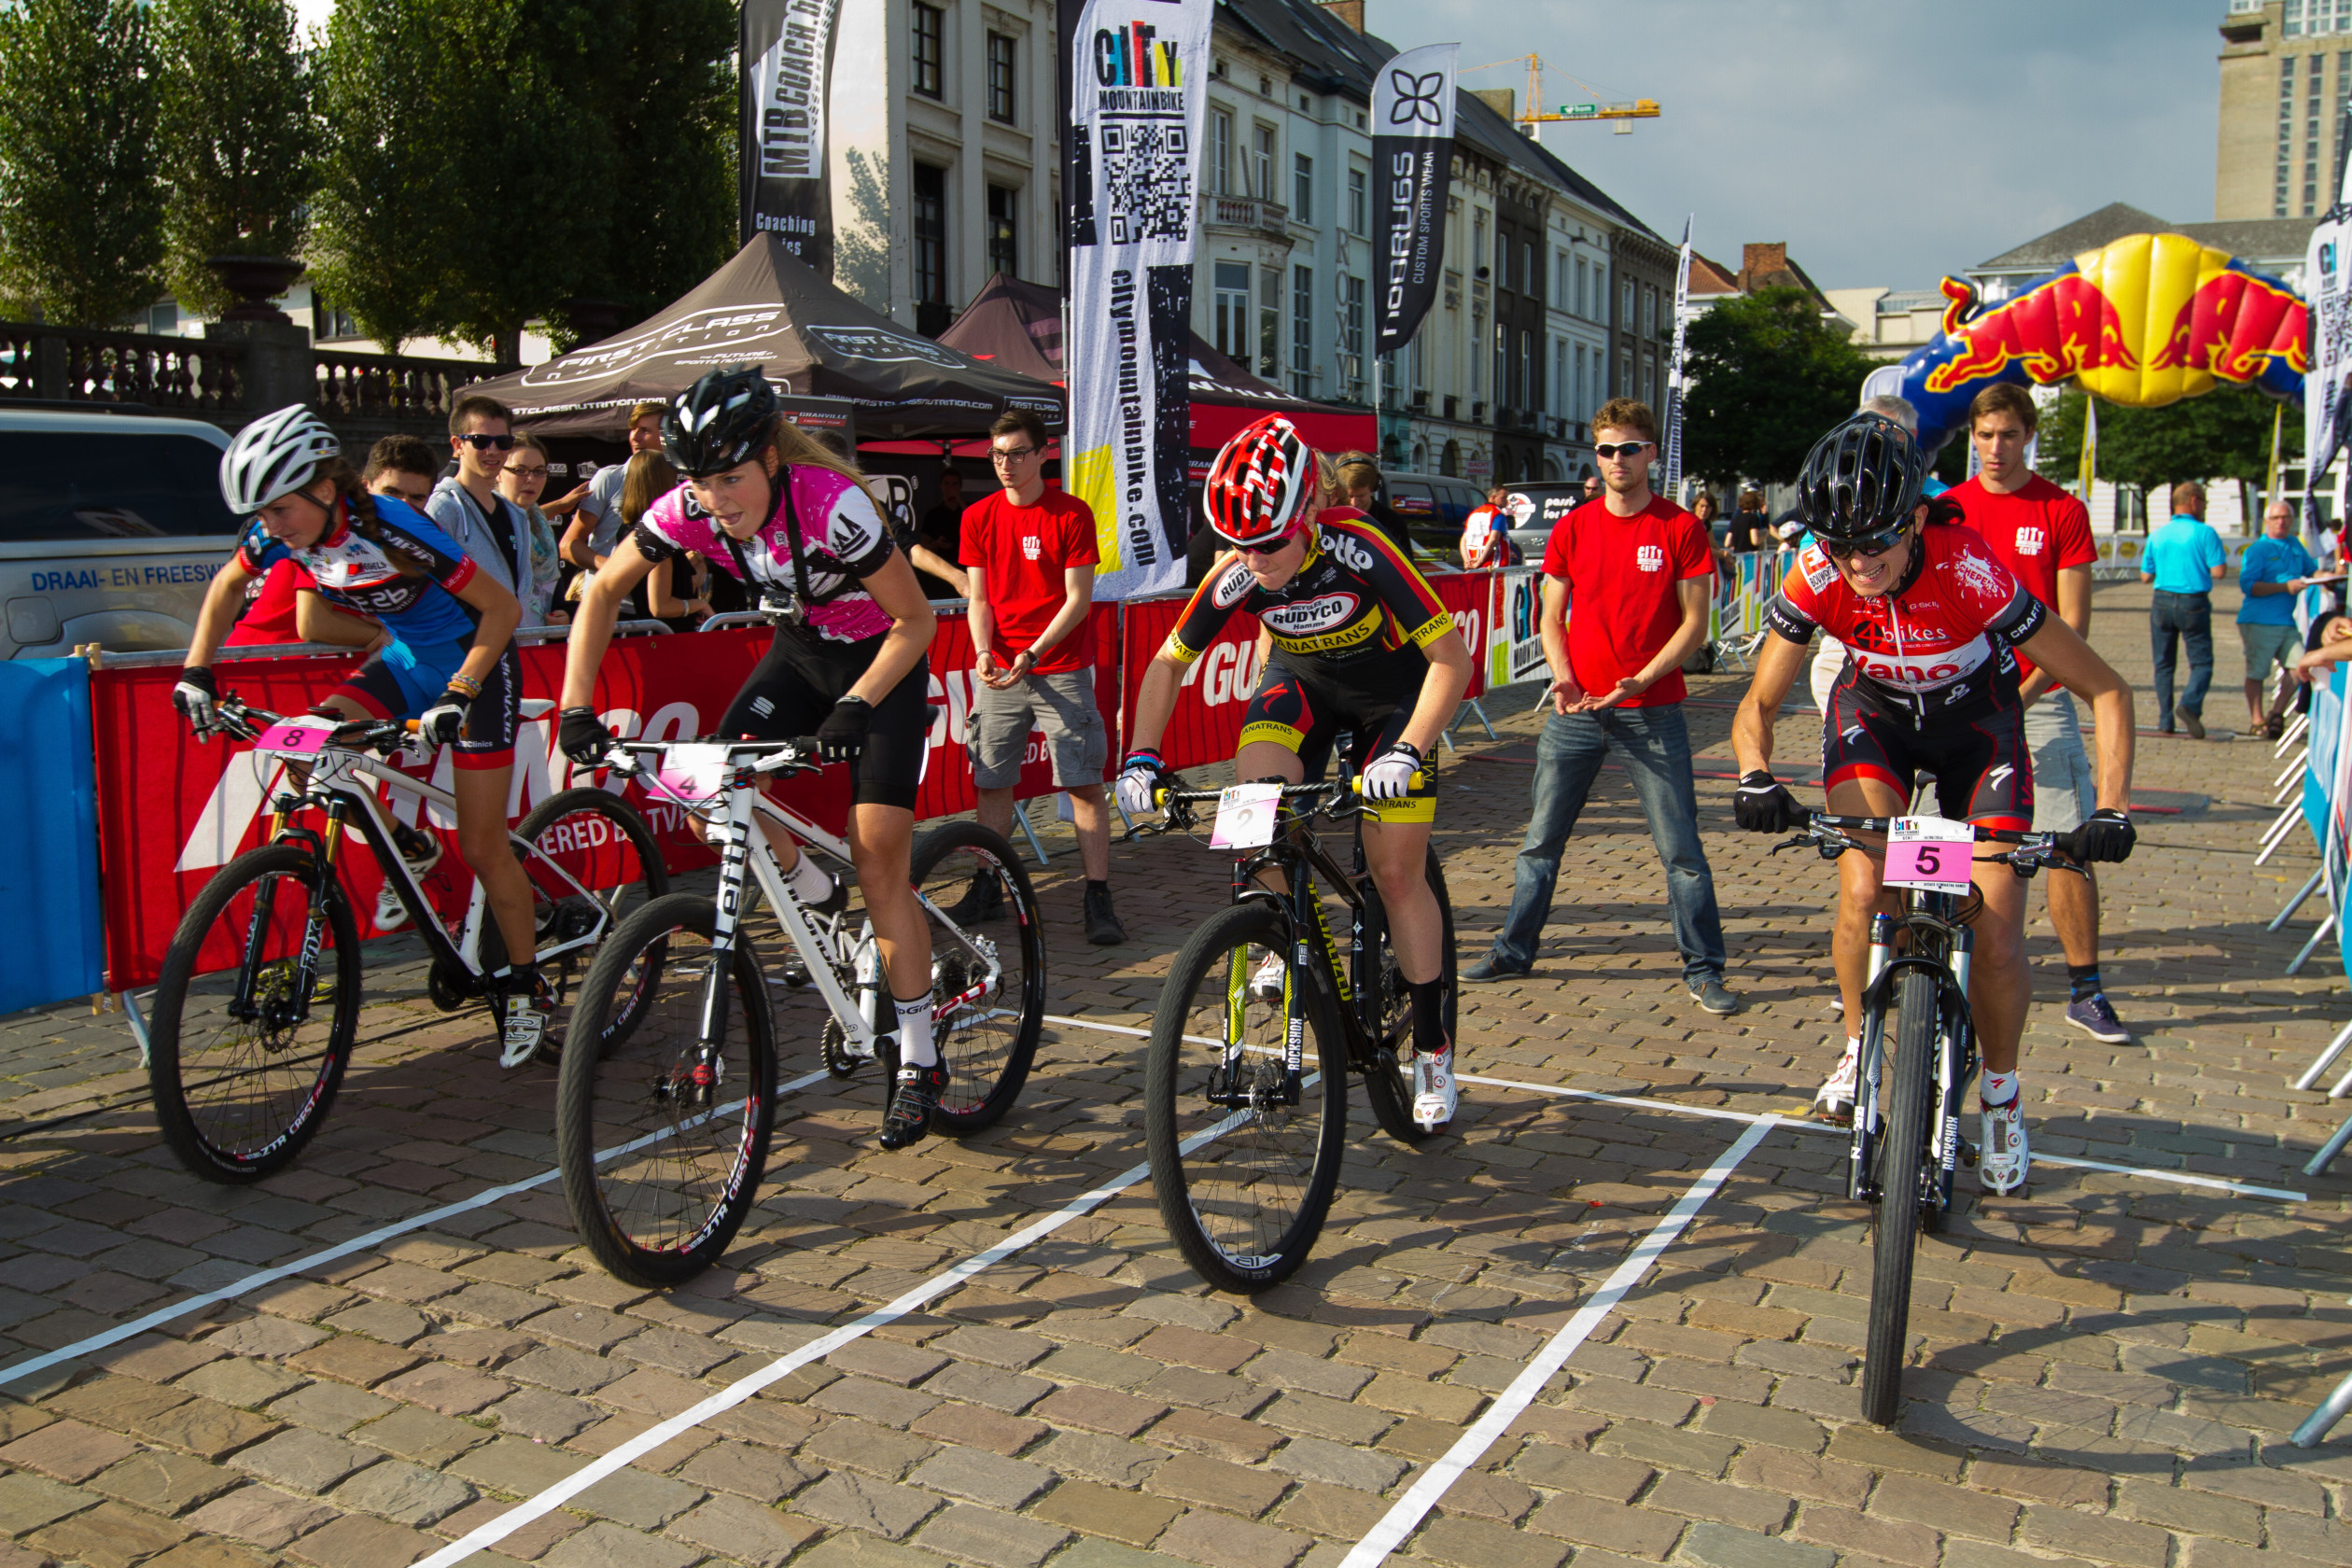 City Mountainbike Gent Recrea 72 DPILoek PIctures Belgium 150914 27